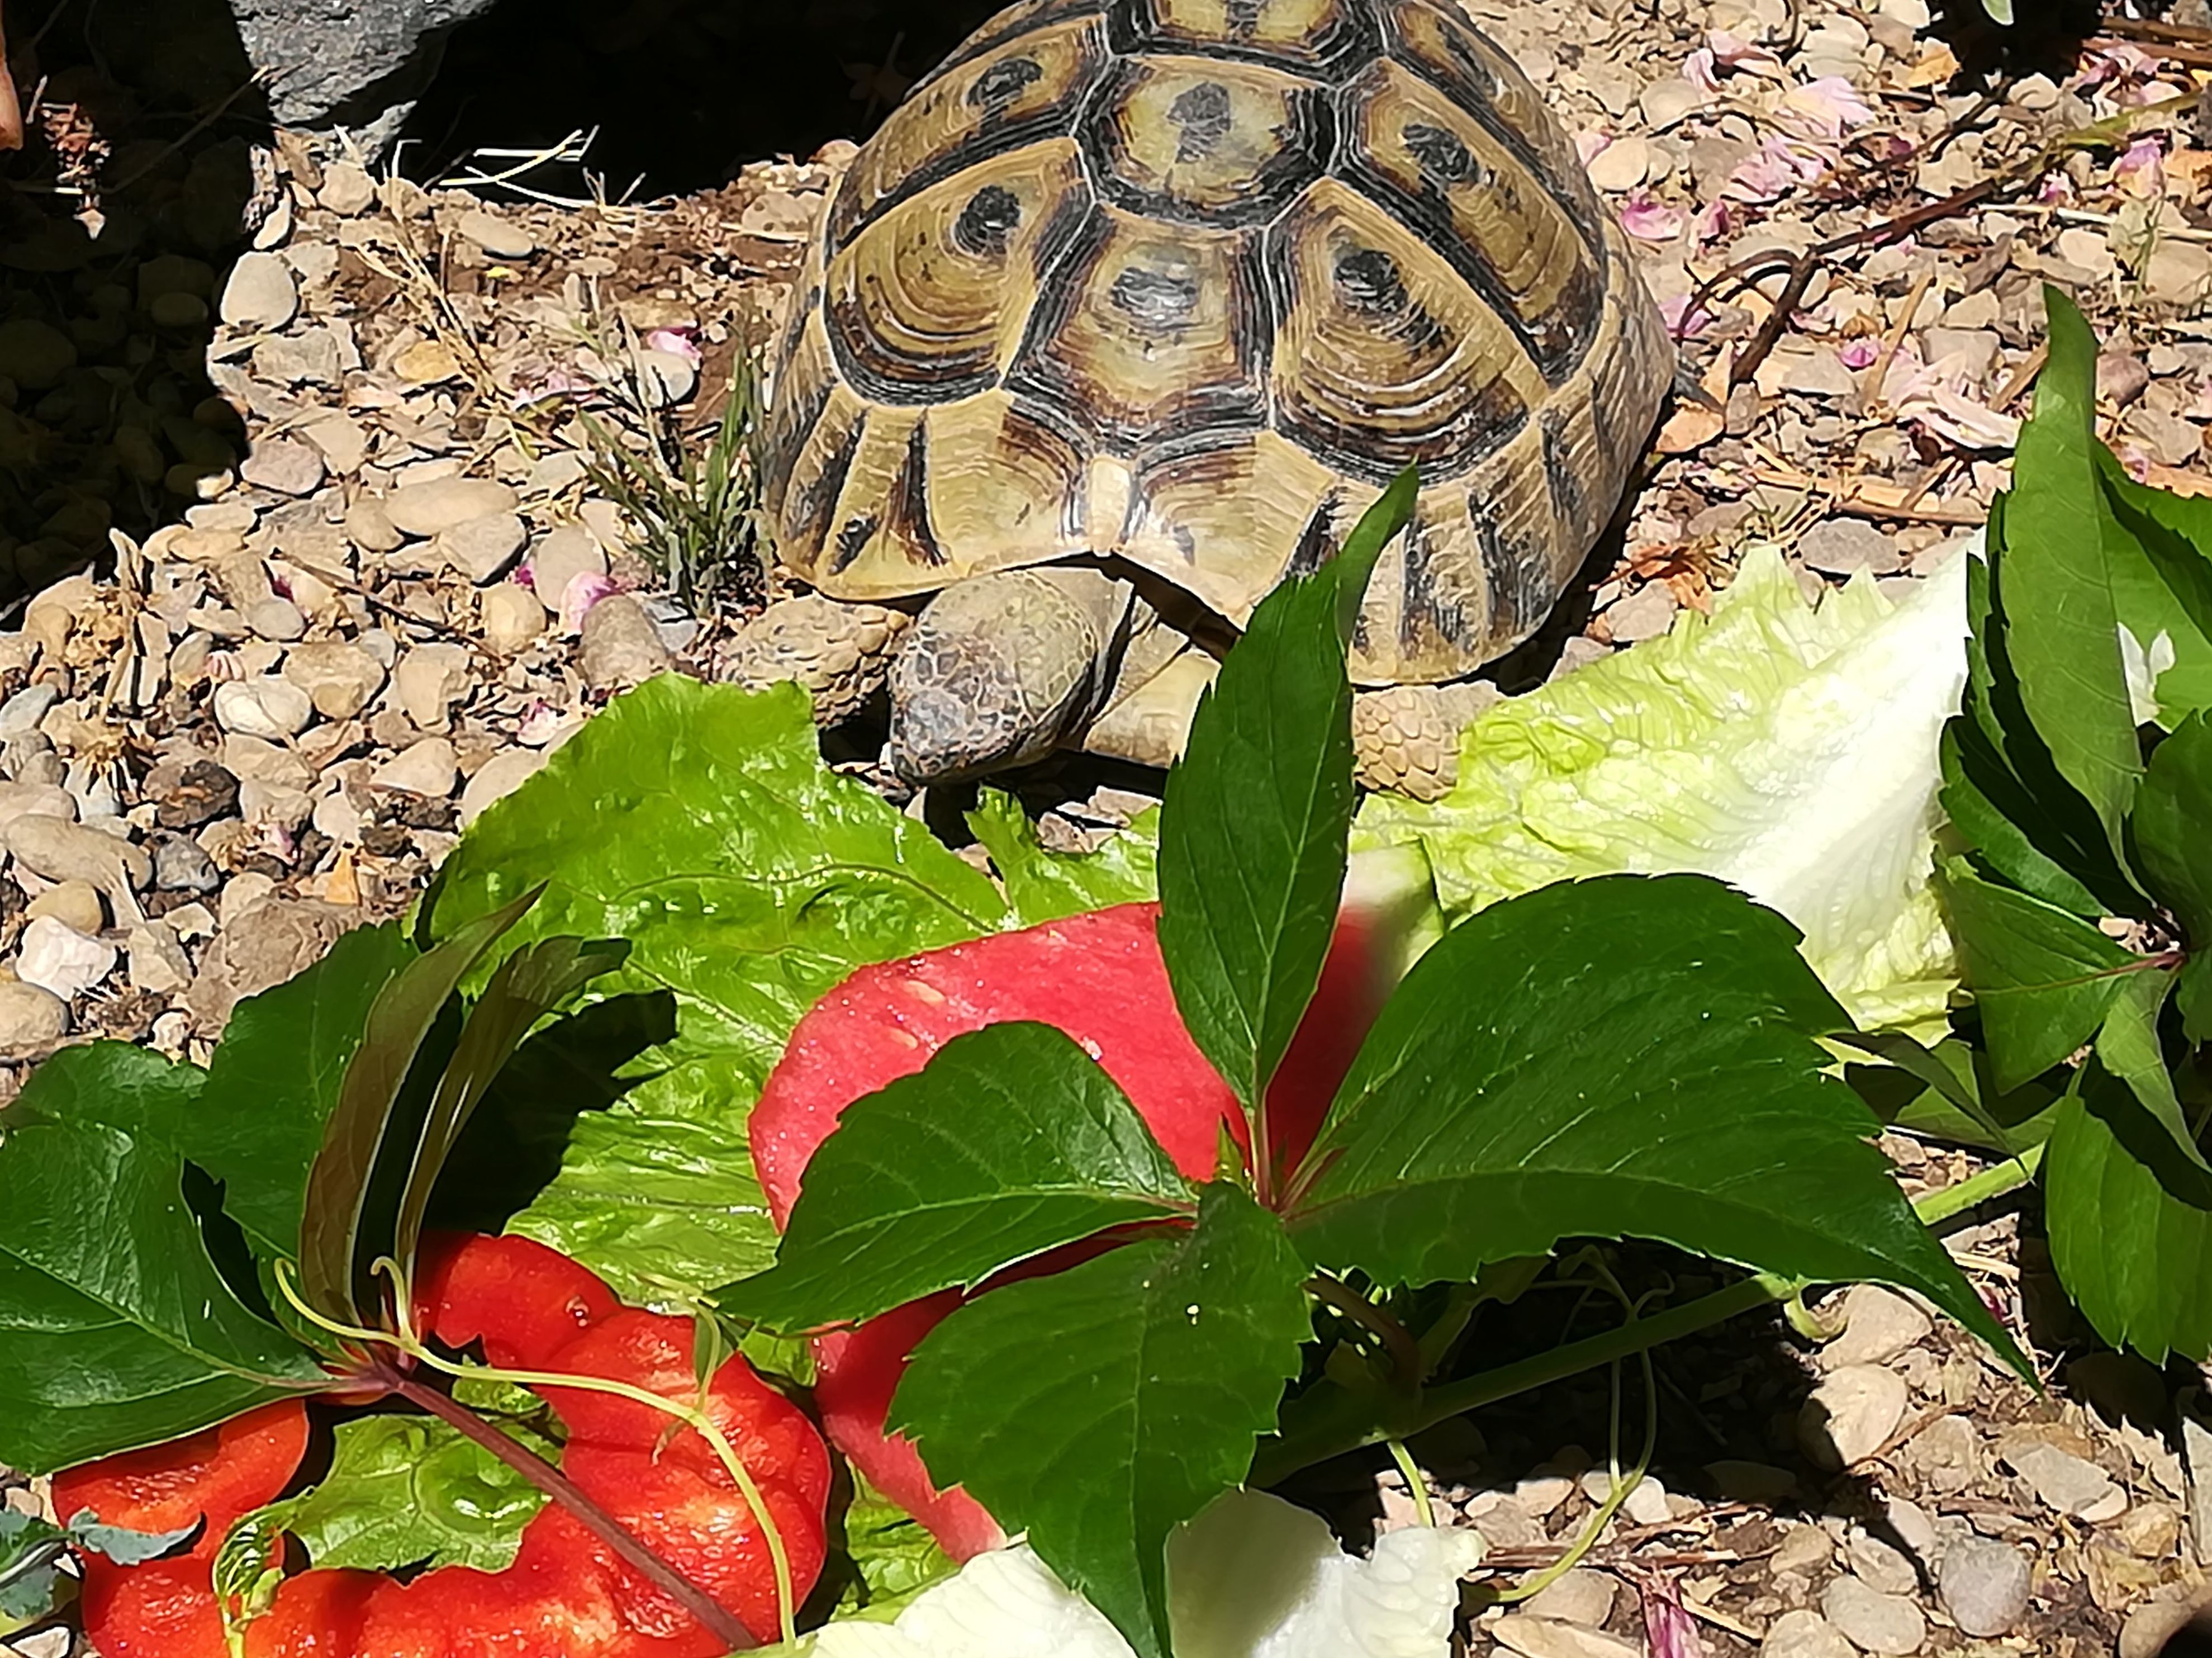 Can Exprés servicio veterinario a domicilio Zaragoza: tortuga mediterránea con suficiente sol, alimentación hoja verde muy poca fruta